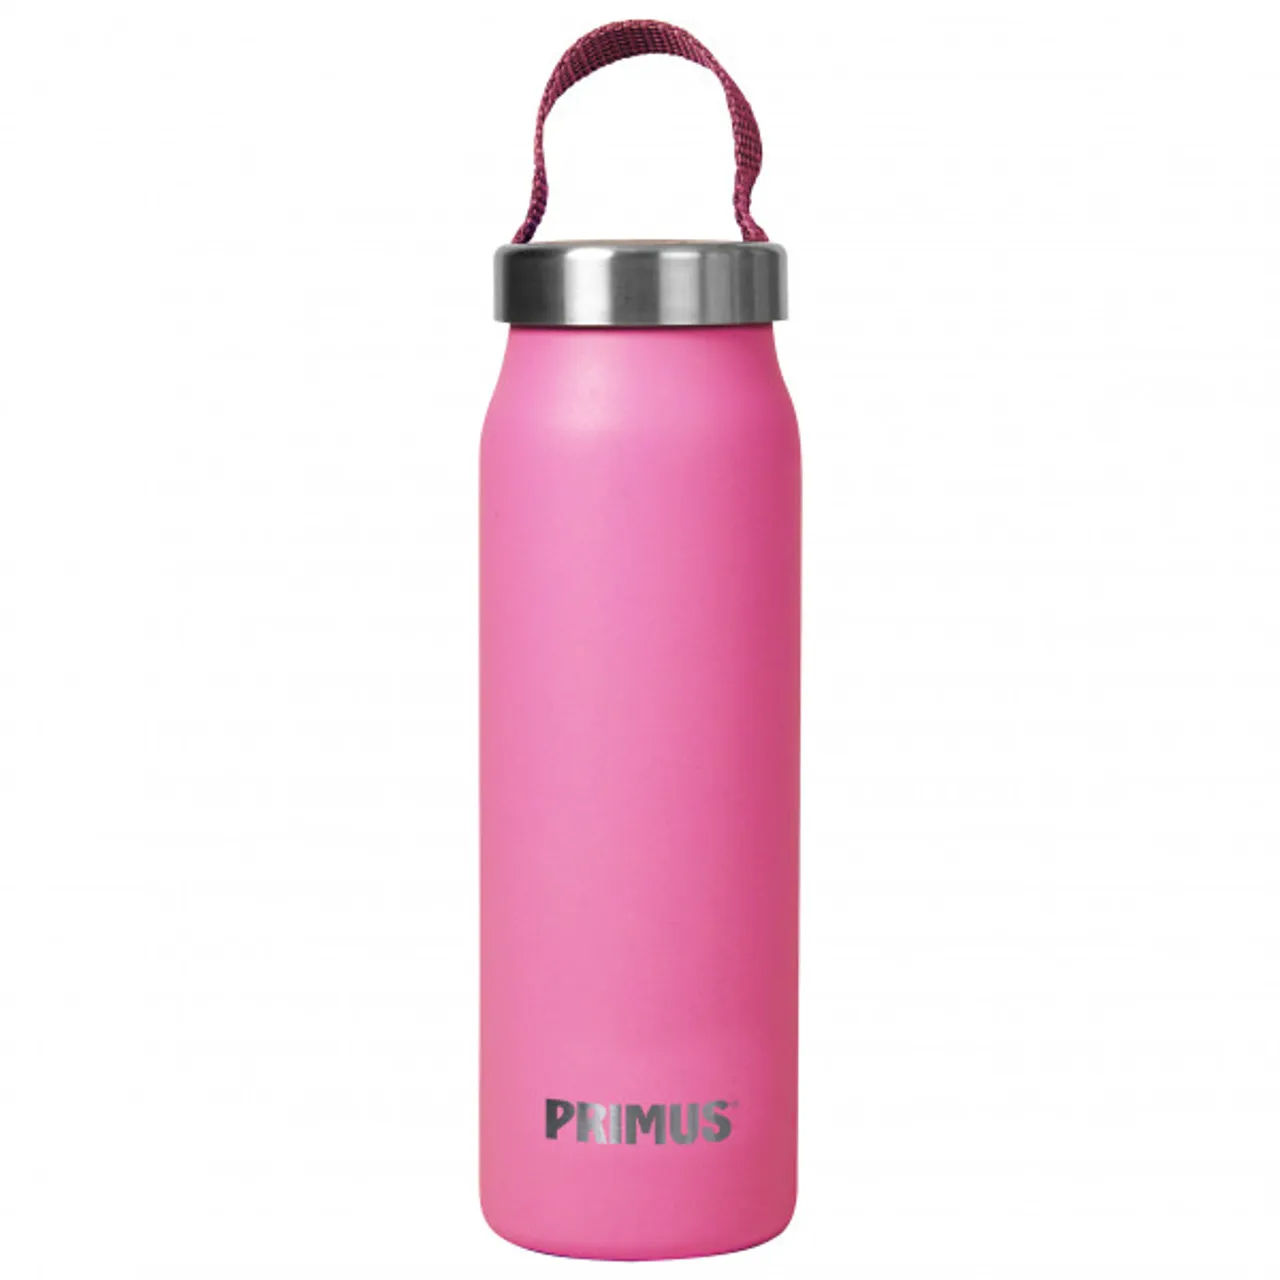 Primus - Klunken Vacuum Bottle 0.5 - Insulated bottle size 500 ml, pink